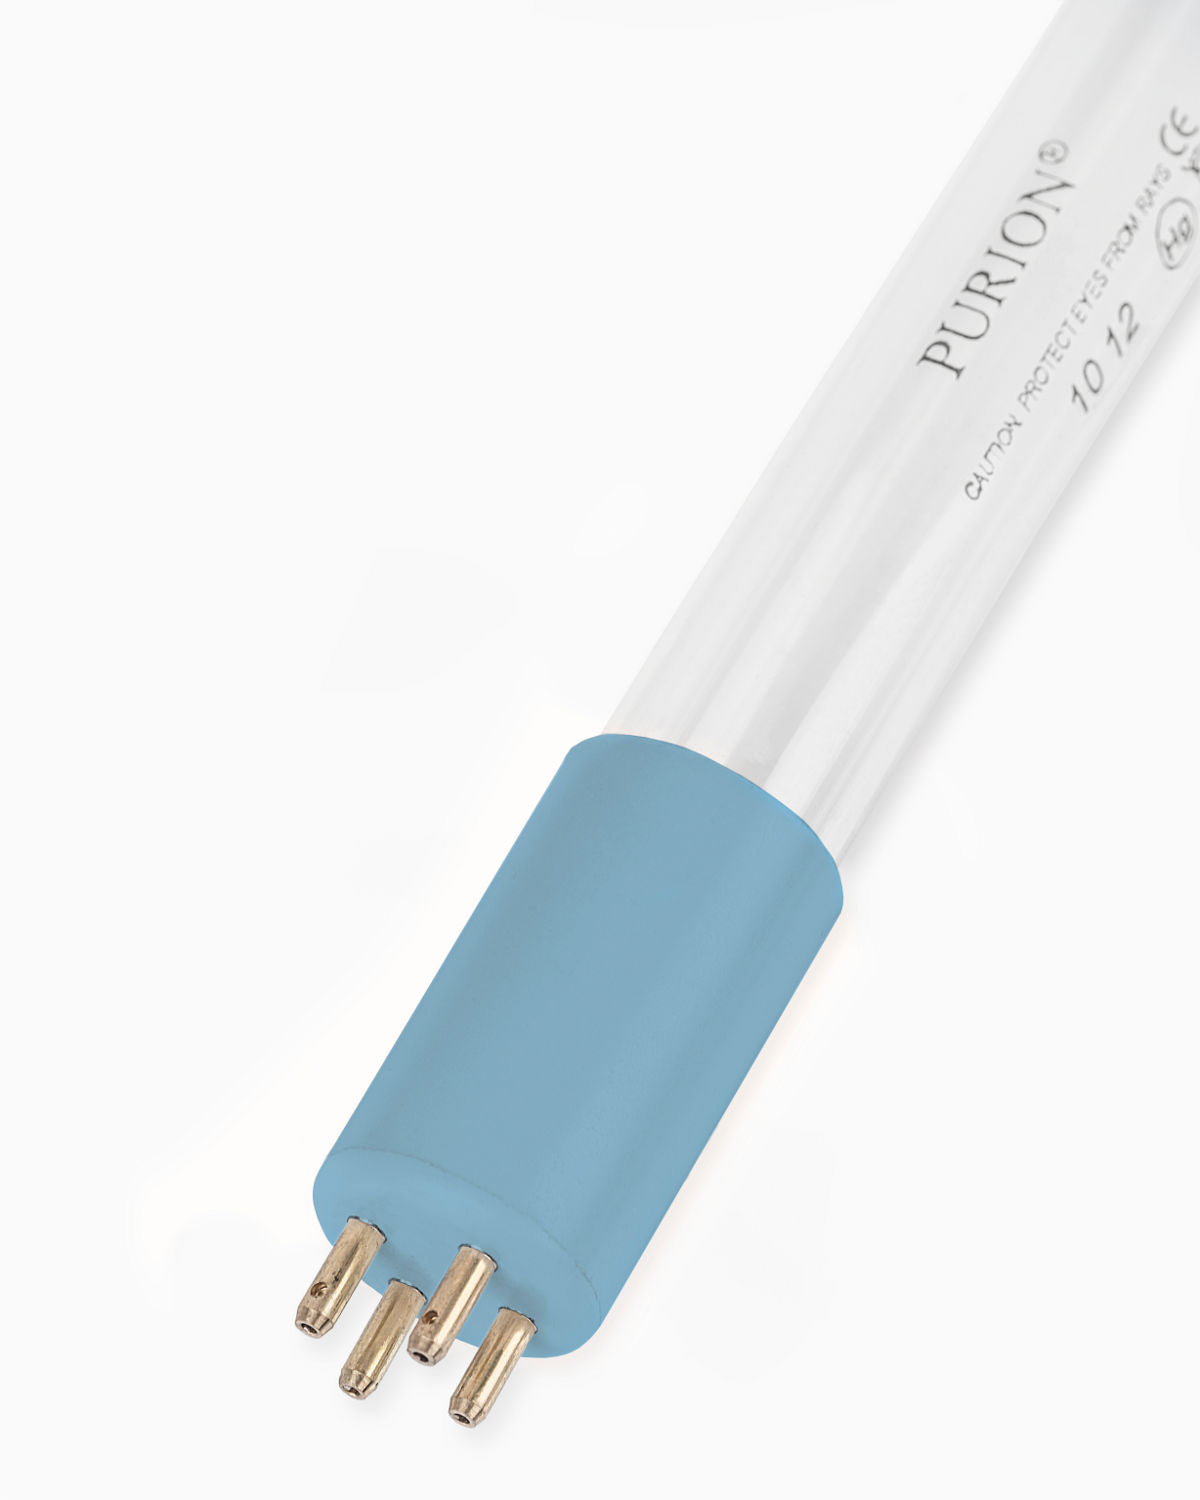 Eine blaue Lichtröhre auf weißem Hintergrund wirbt für den PURION IBC DN150 48W OTC SPL BS der UV Concept GmbH zur Sicherstellung der Trinkwasserqualität und Beseitigung von Verkeimungen.